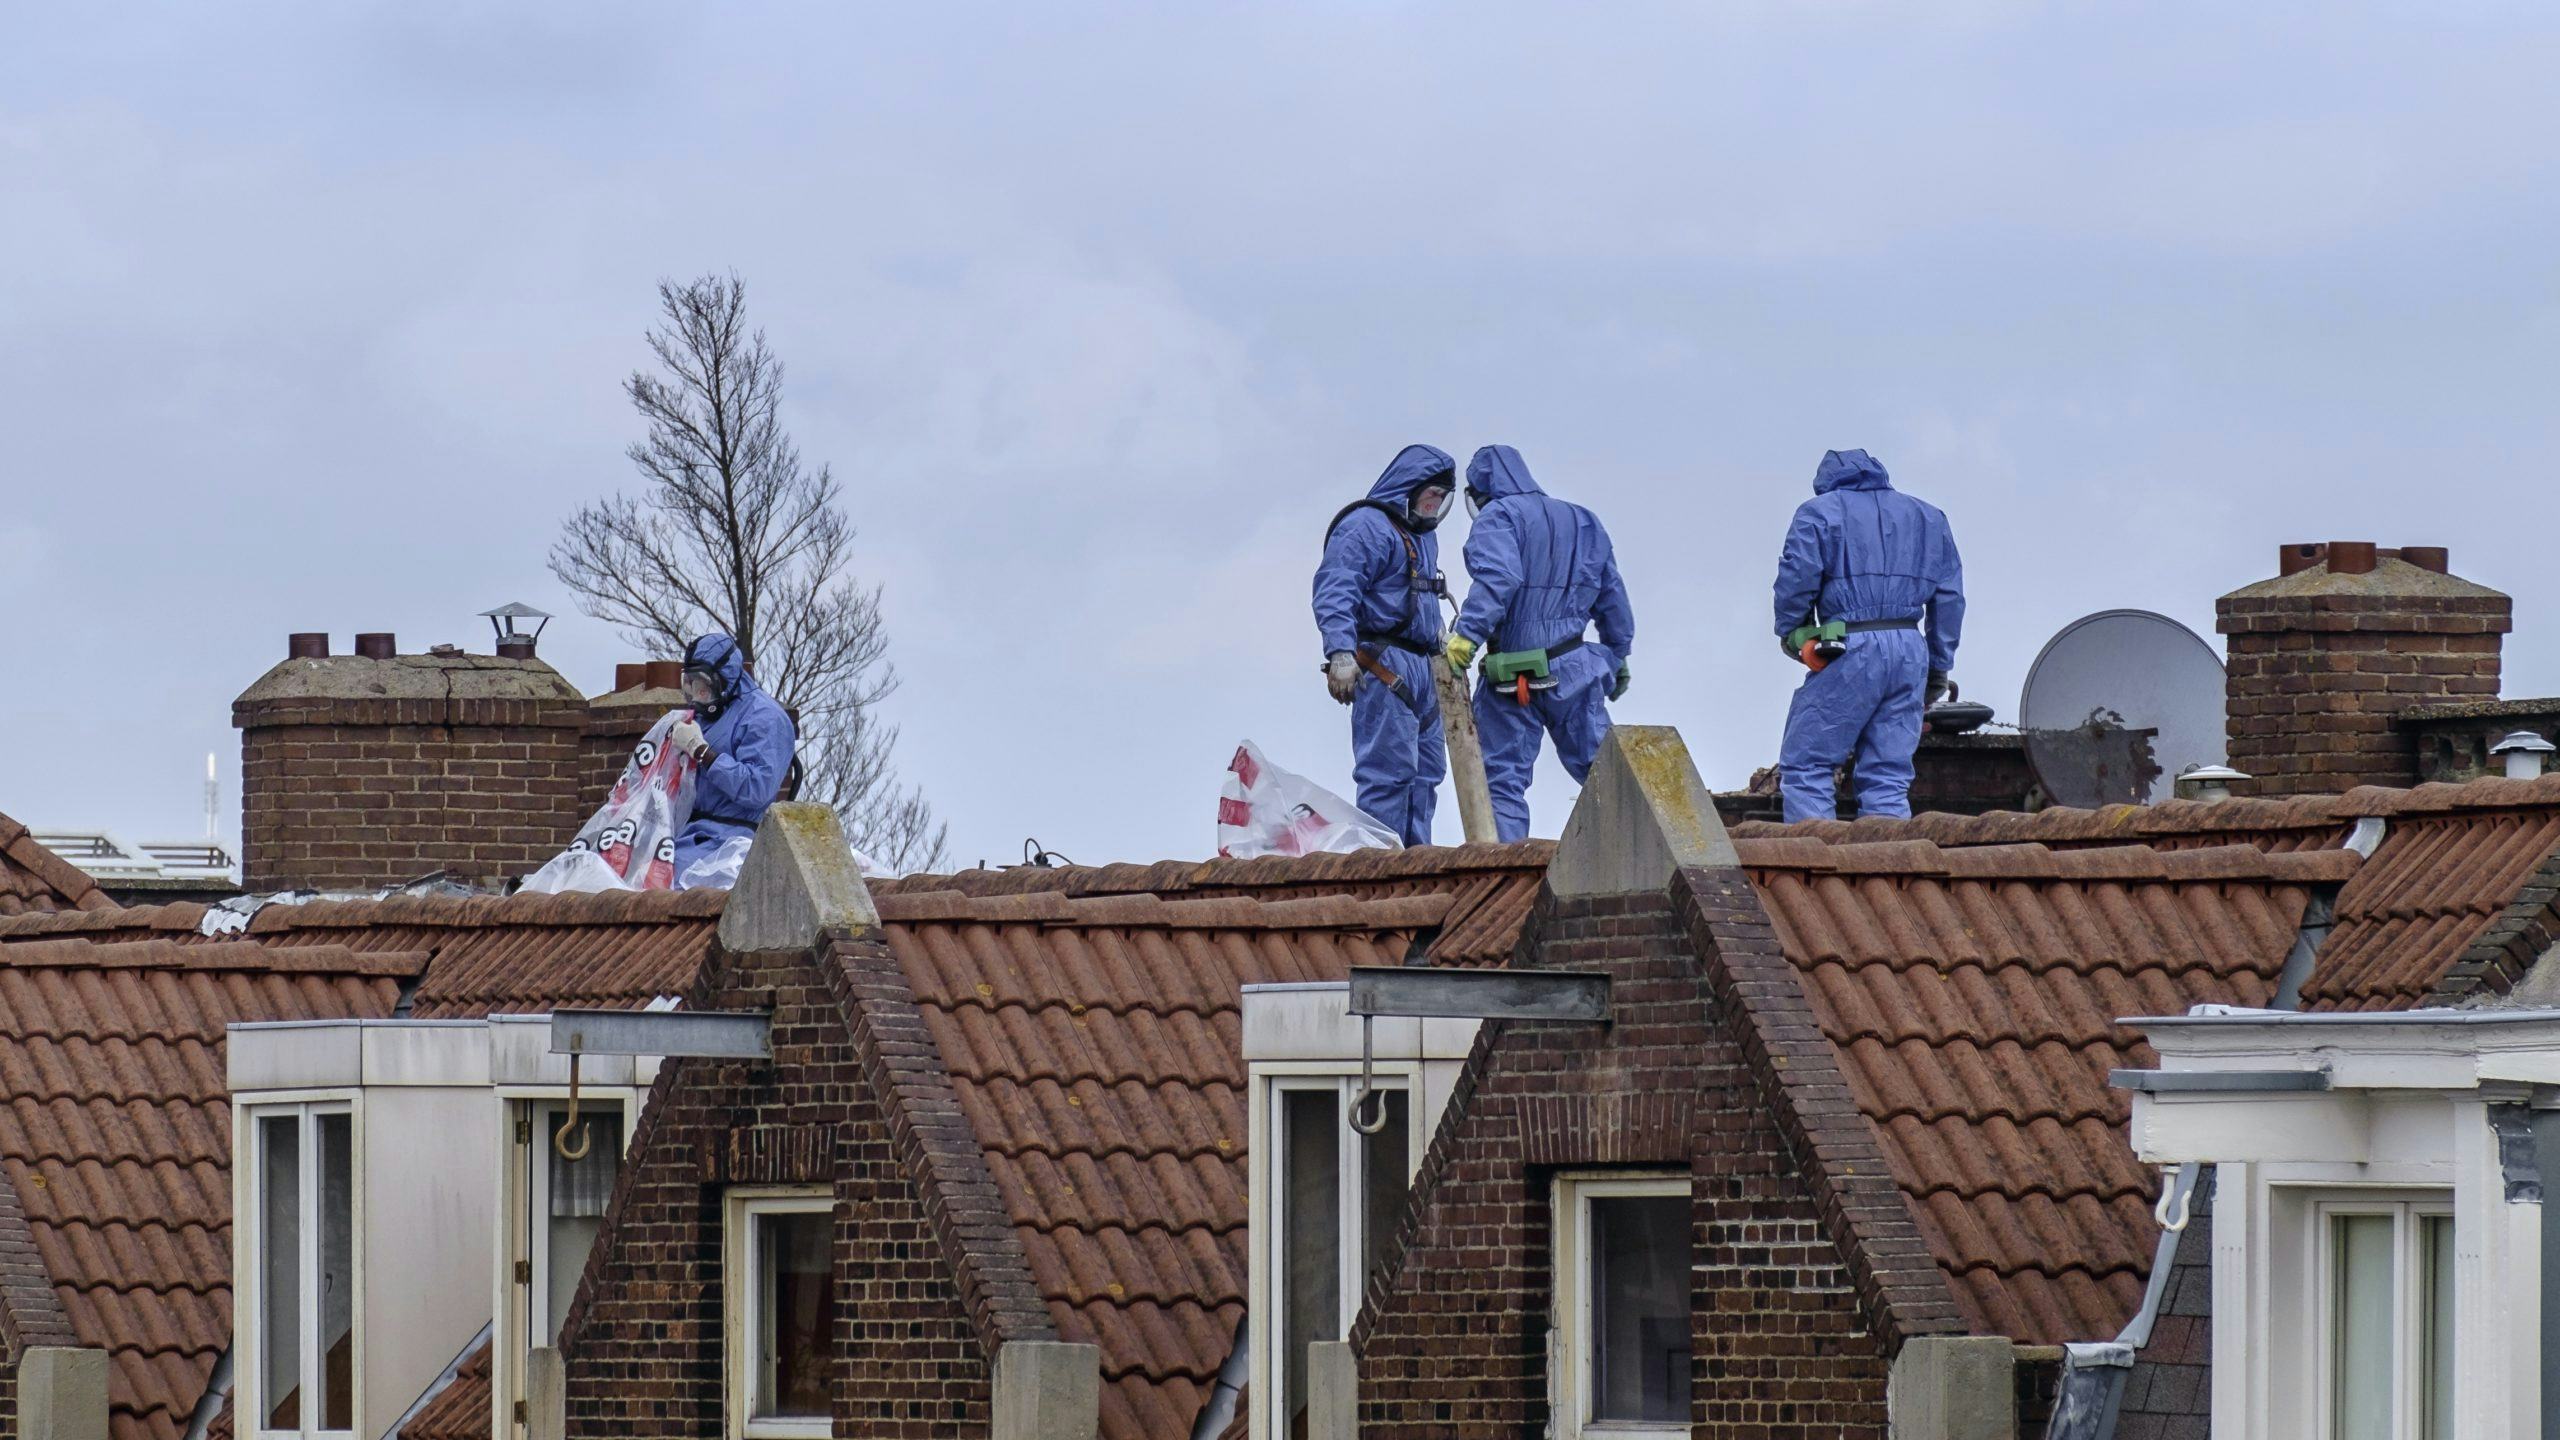 Verwijderen van asbest op daken in Amsterdam. Foto: Shutterstock